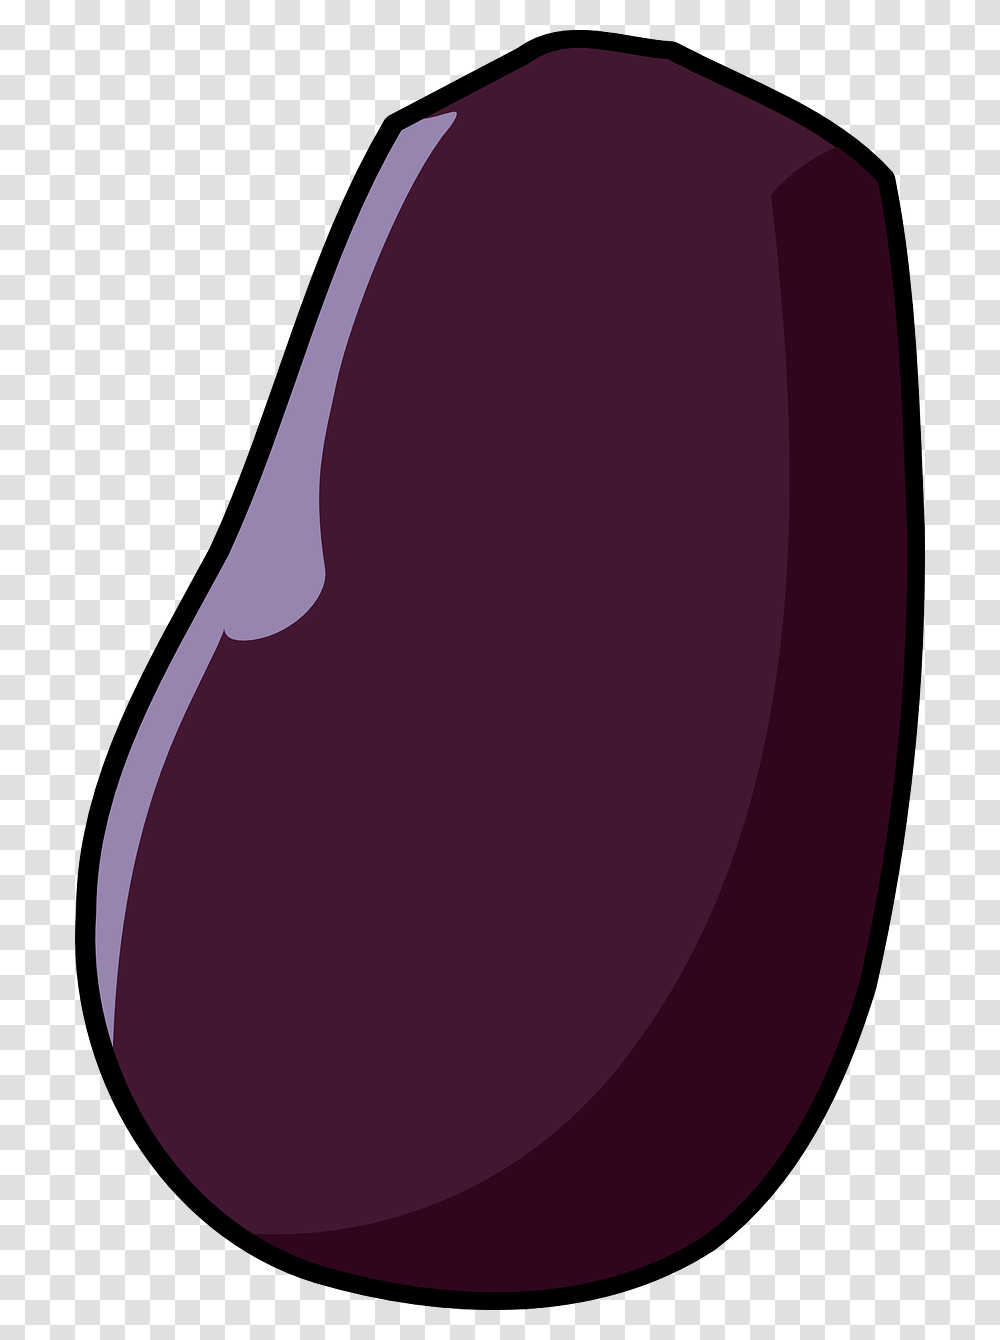 Eggplant, Vegetable, Food, Purple, Maroon Transparent Png